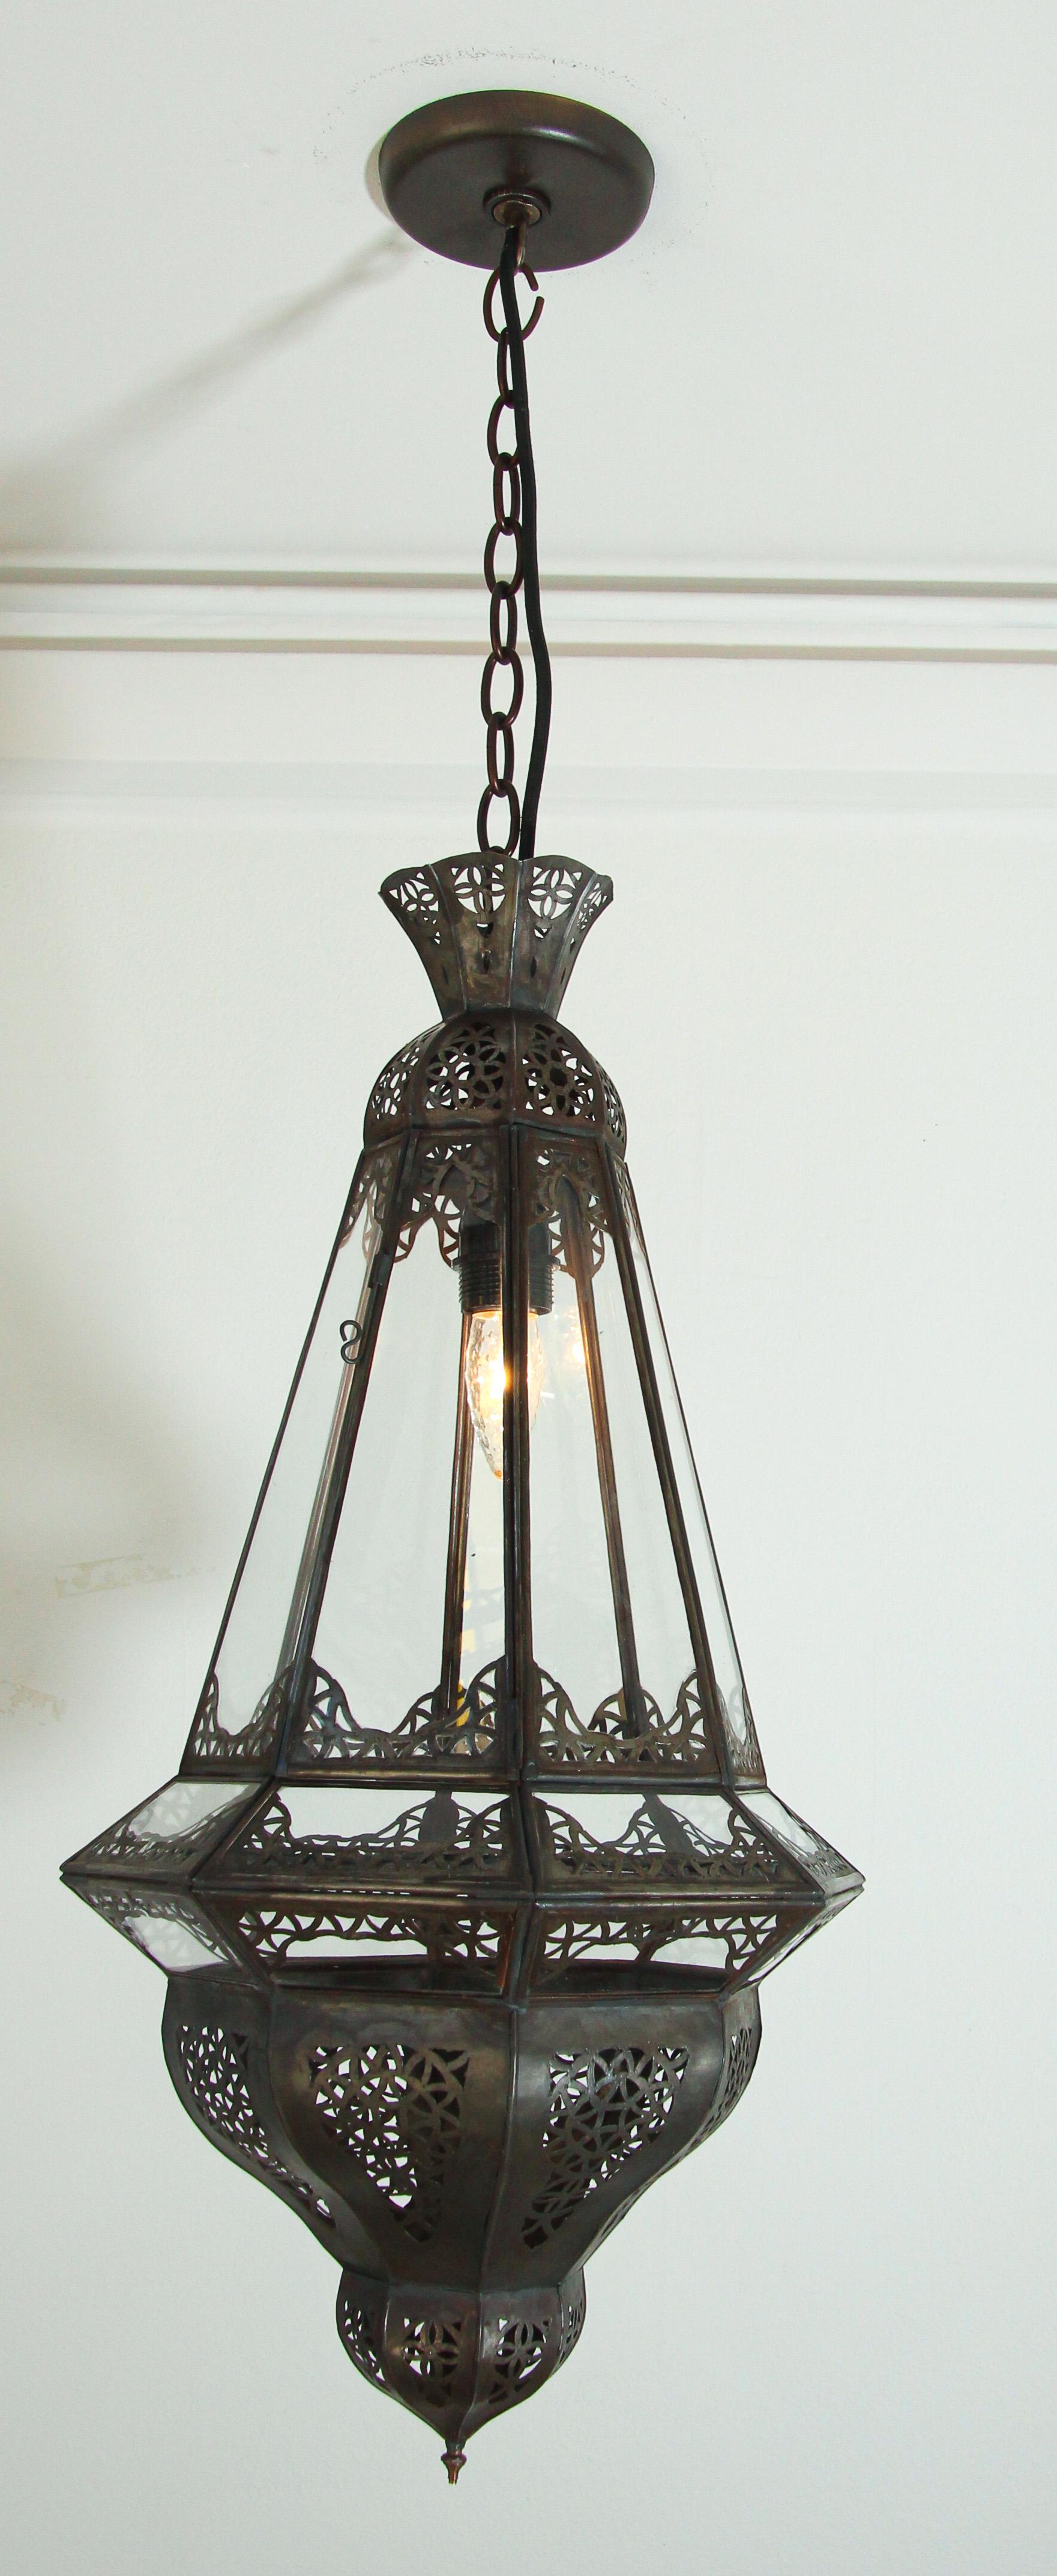 Lanterne marocaine en forme de diamant avec verre transparent et métal.
Ce luminaire mauresque est fabriqué à la main par des artisans au Maroc
Le métal est délicatement découpé à la main en motifs mauresques filigranes, épi de faîtage en